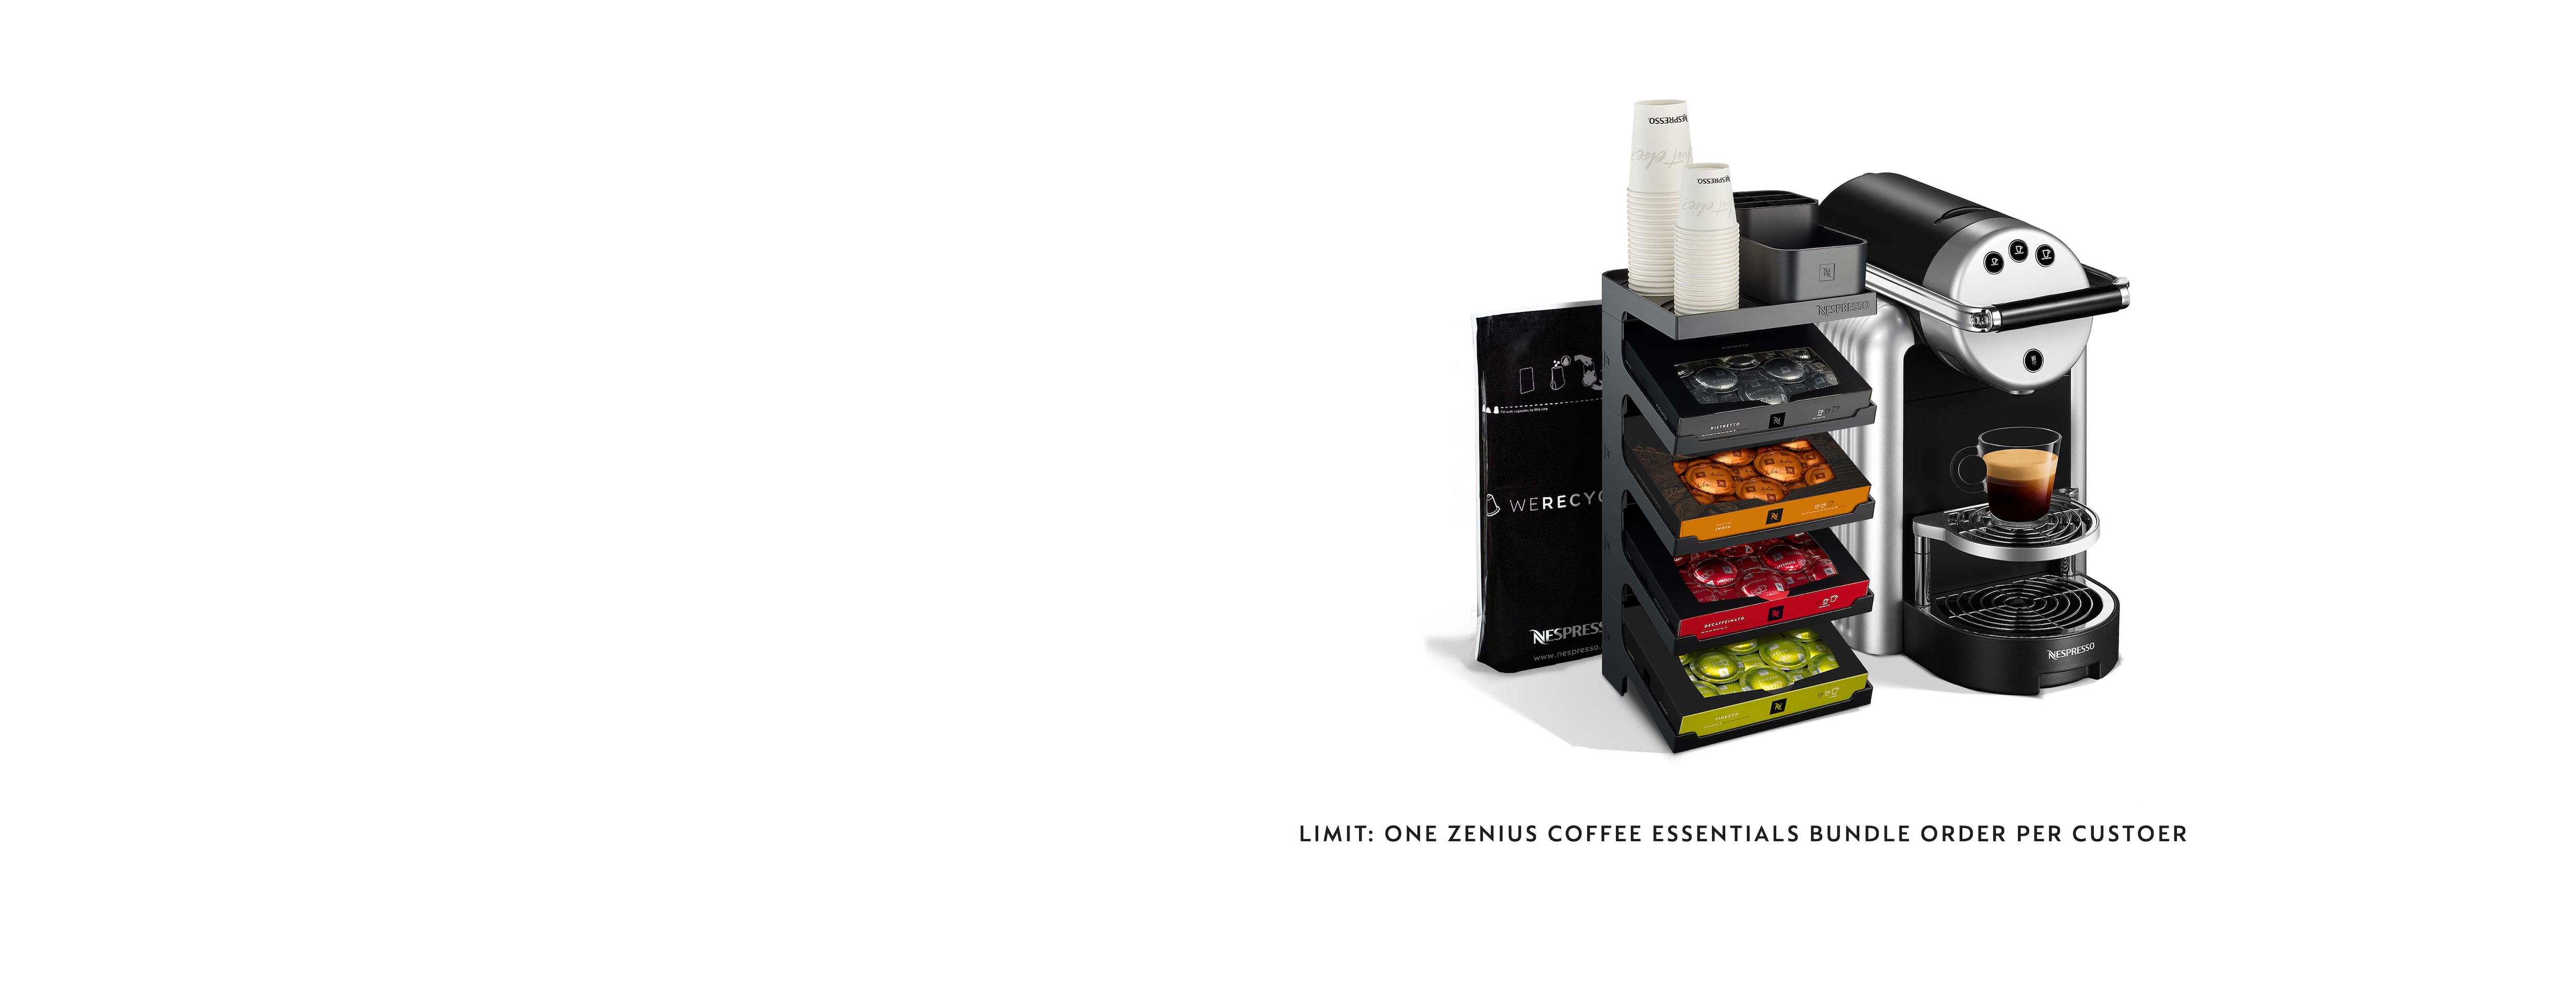 Zenius Coffee Essentials | Machines | Nespresso Pro USA